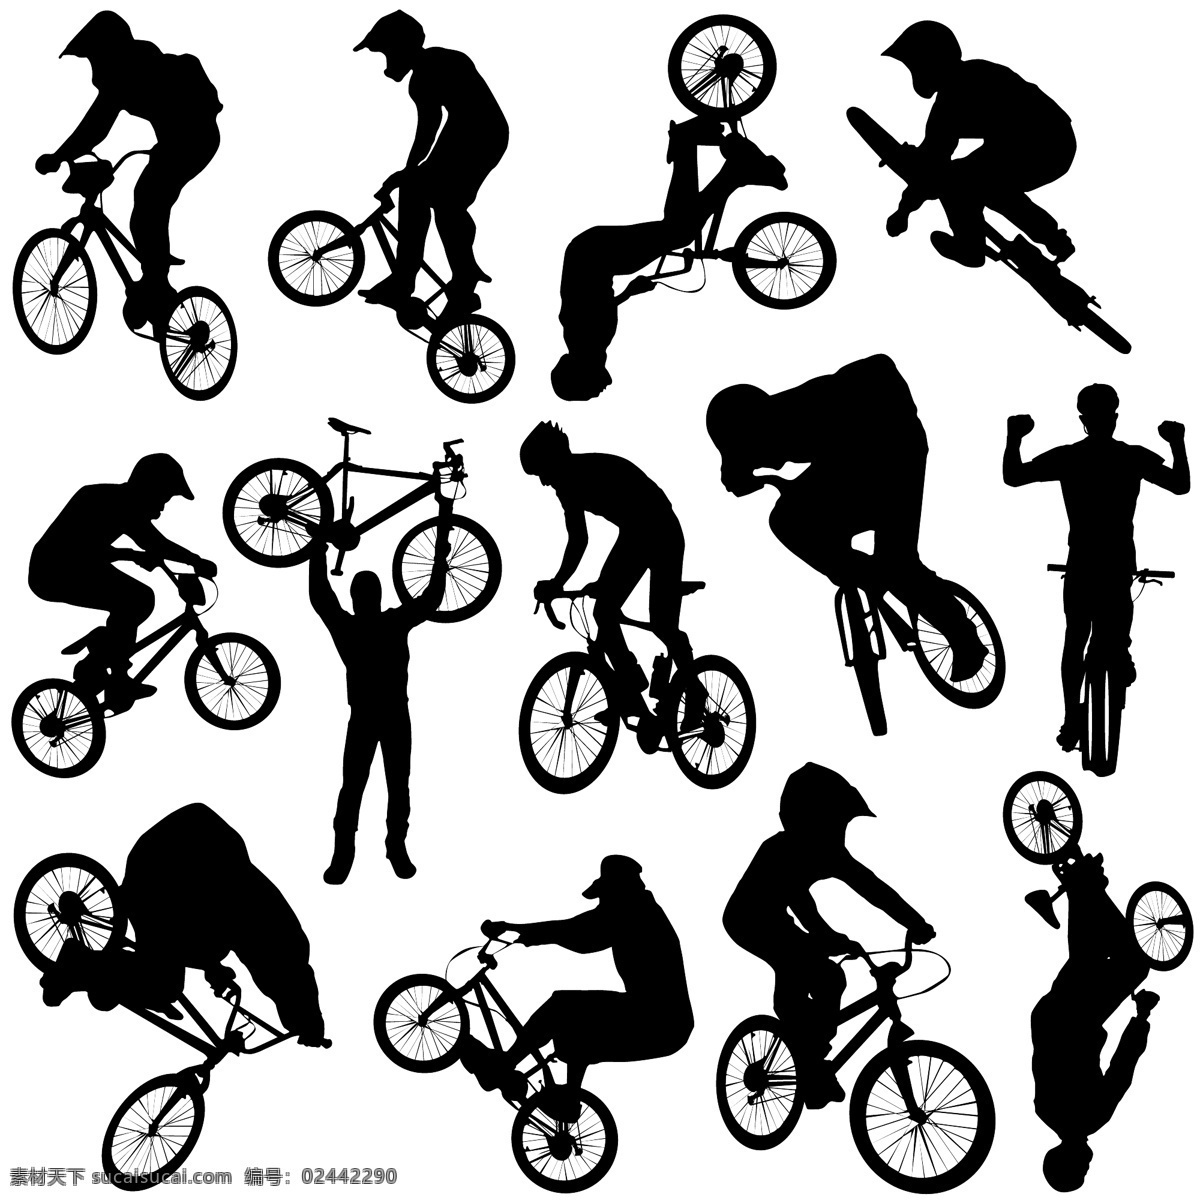 单车剪影 自行车人物 矢量骑车人物 矢量人物 矢量自行车 骑车背景 人物图库